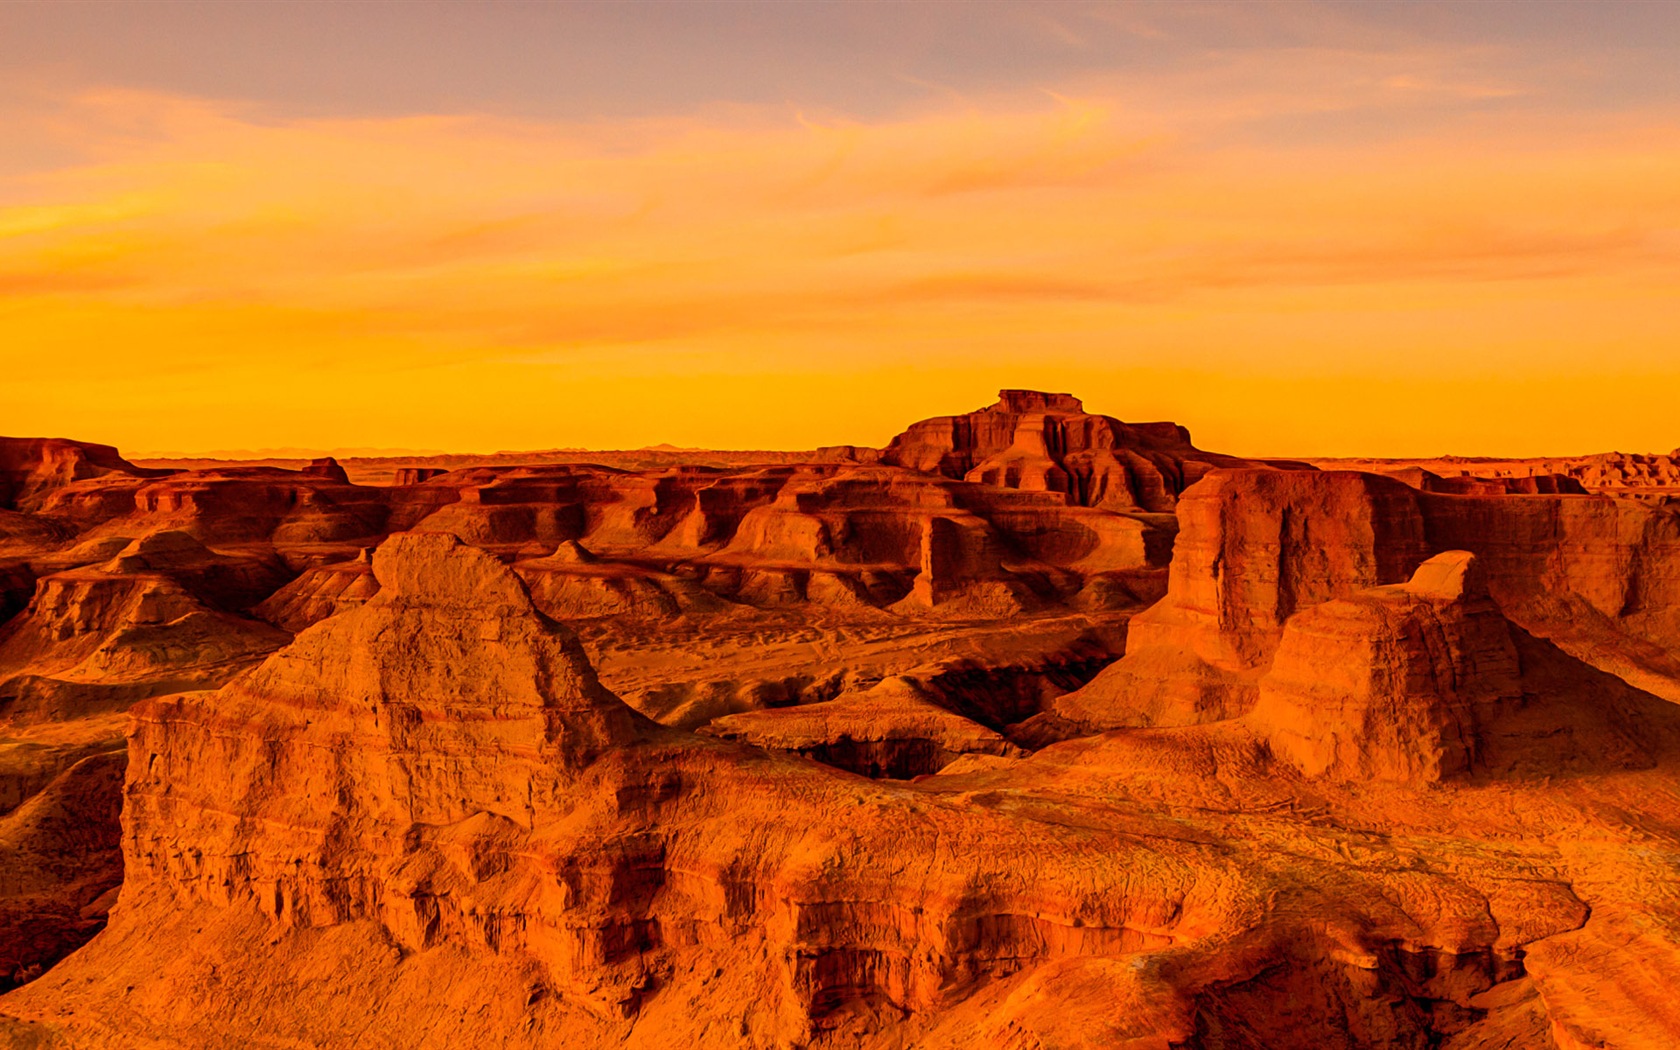 Les déserts chauds et arides, de Windows 8 fonds d'écran widescreen panoramique #6 - 1680x1050